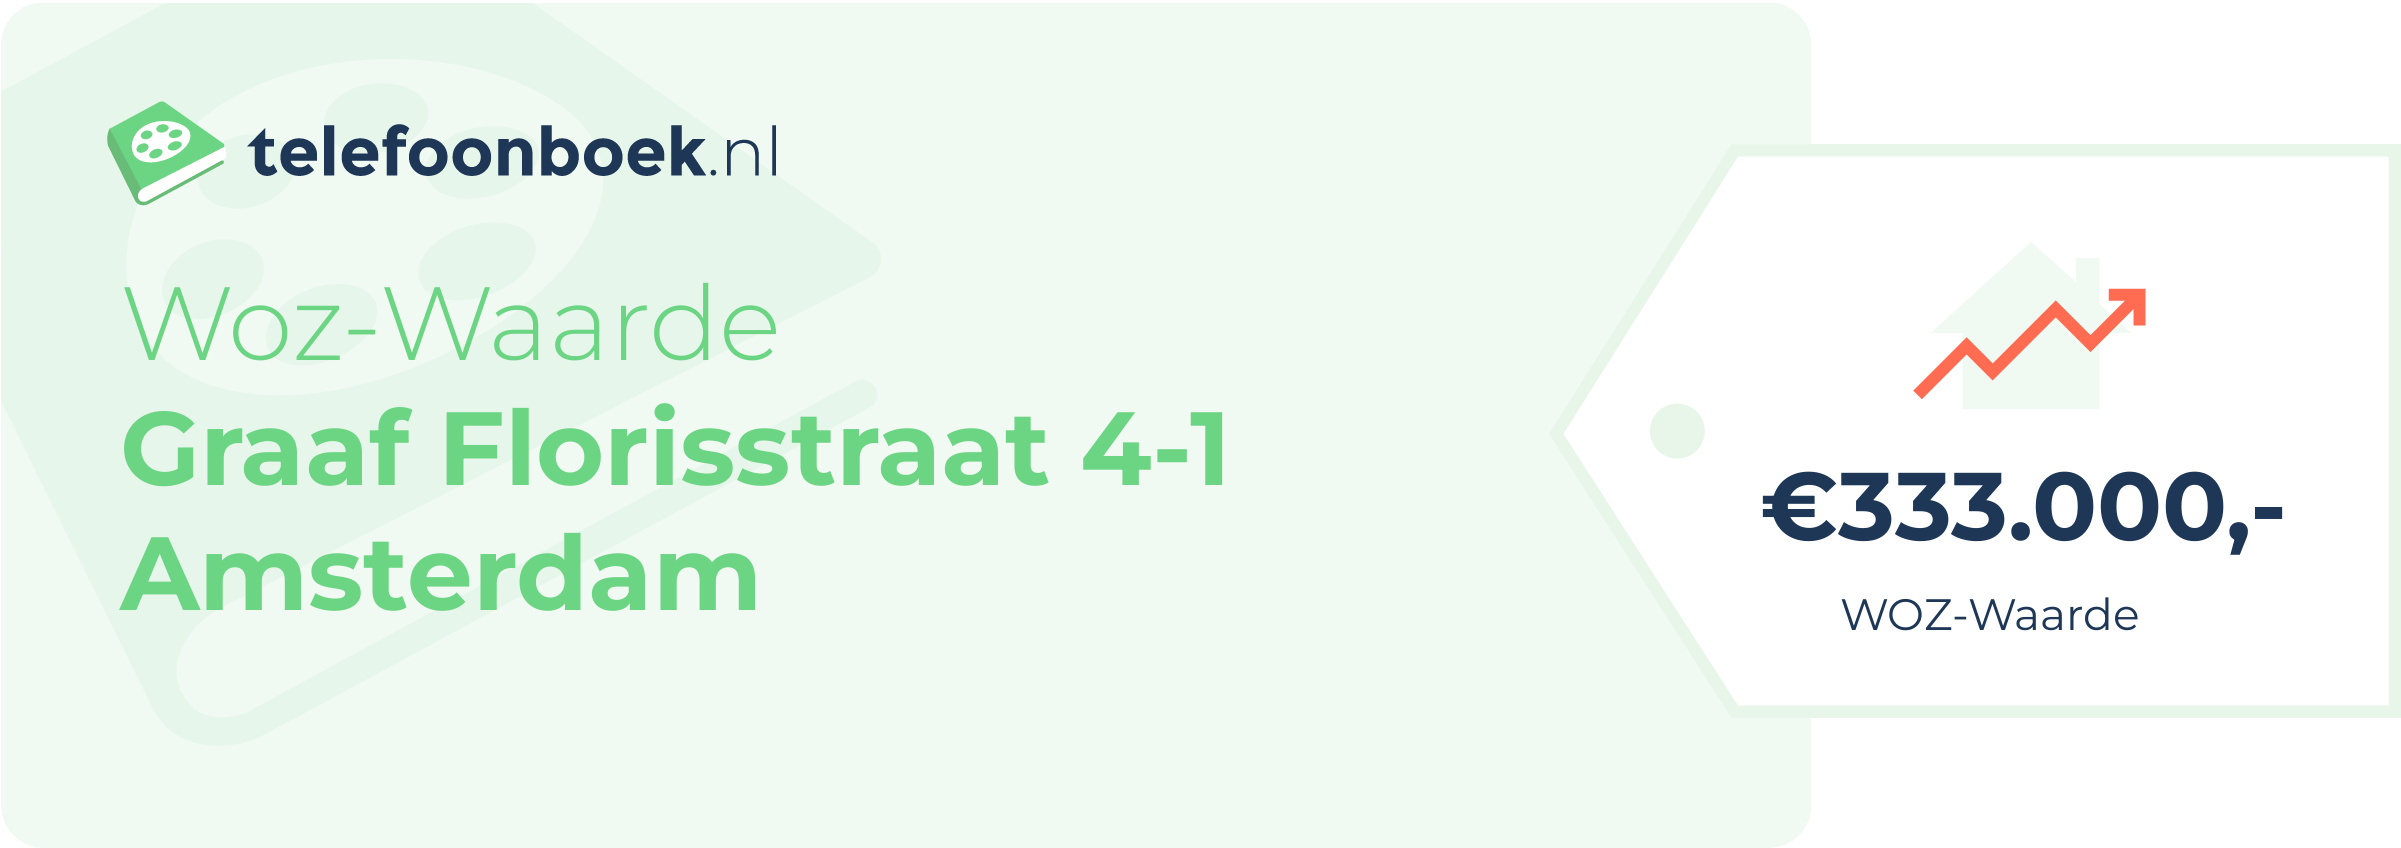 WOZ-waarde Graaf Florisstraat 4-1 Amsterdam